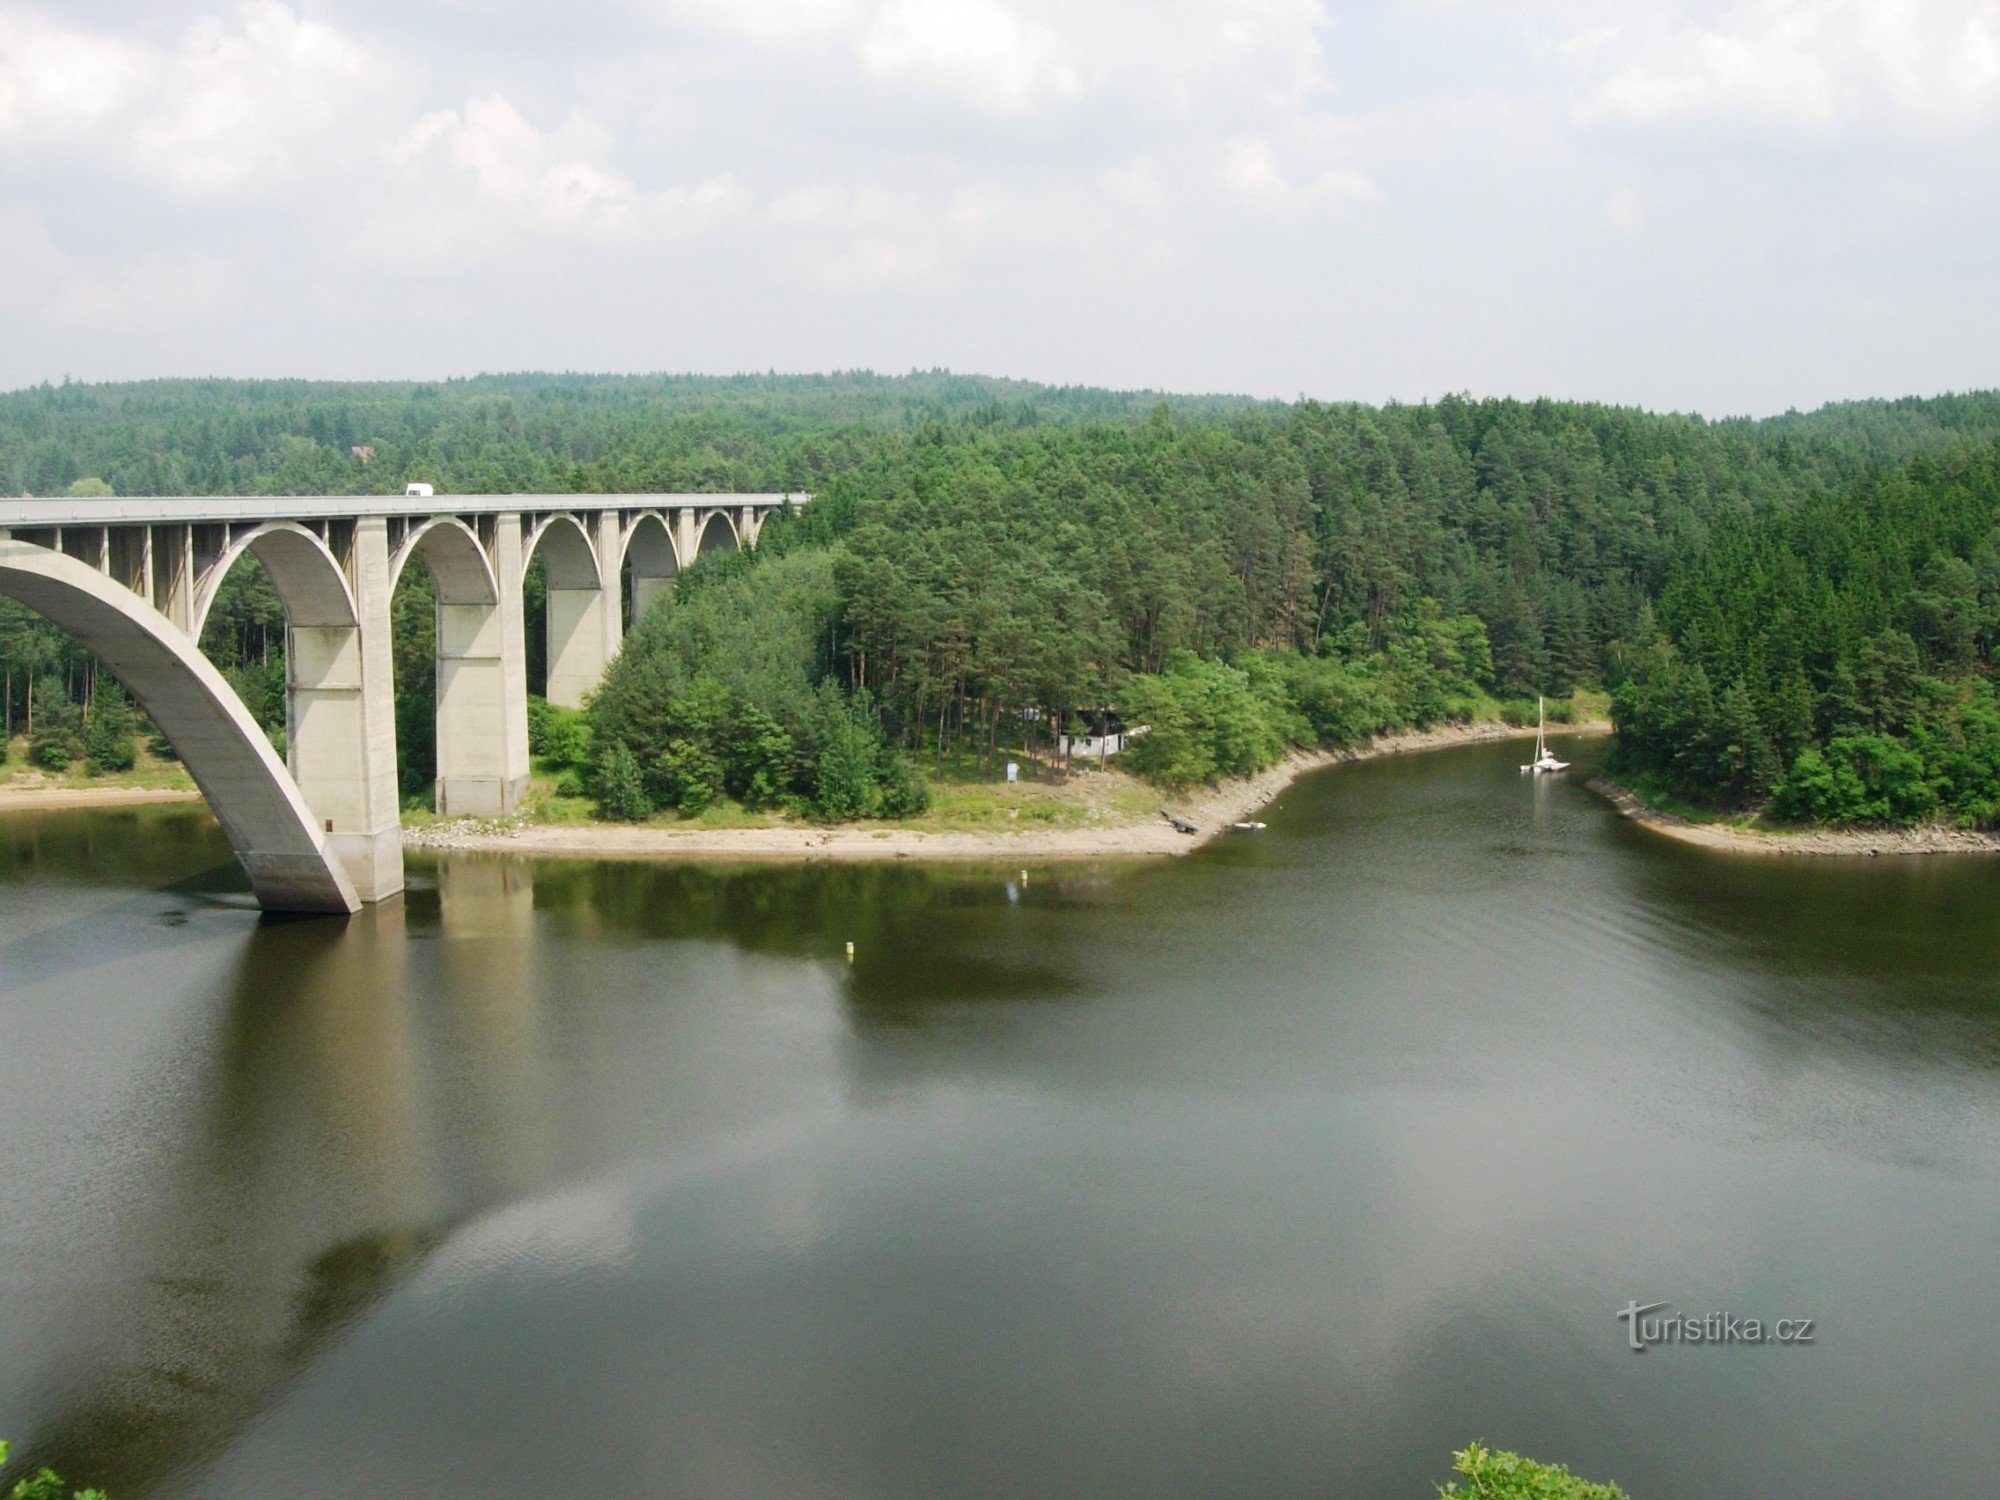 Podolský bro och bukt på Budovické potok